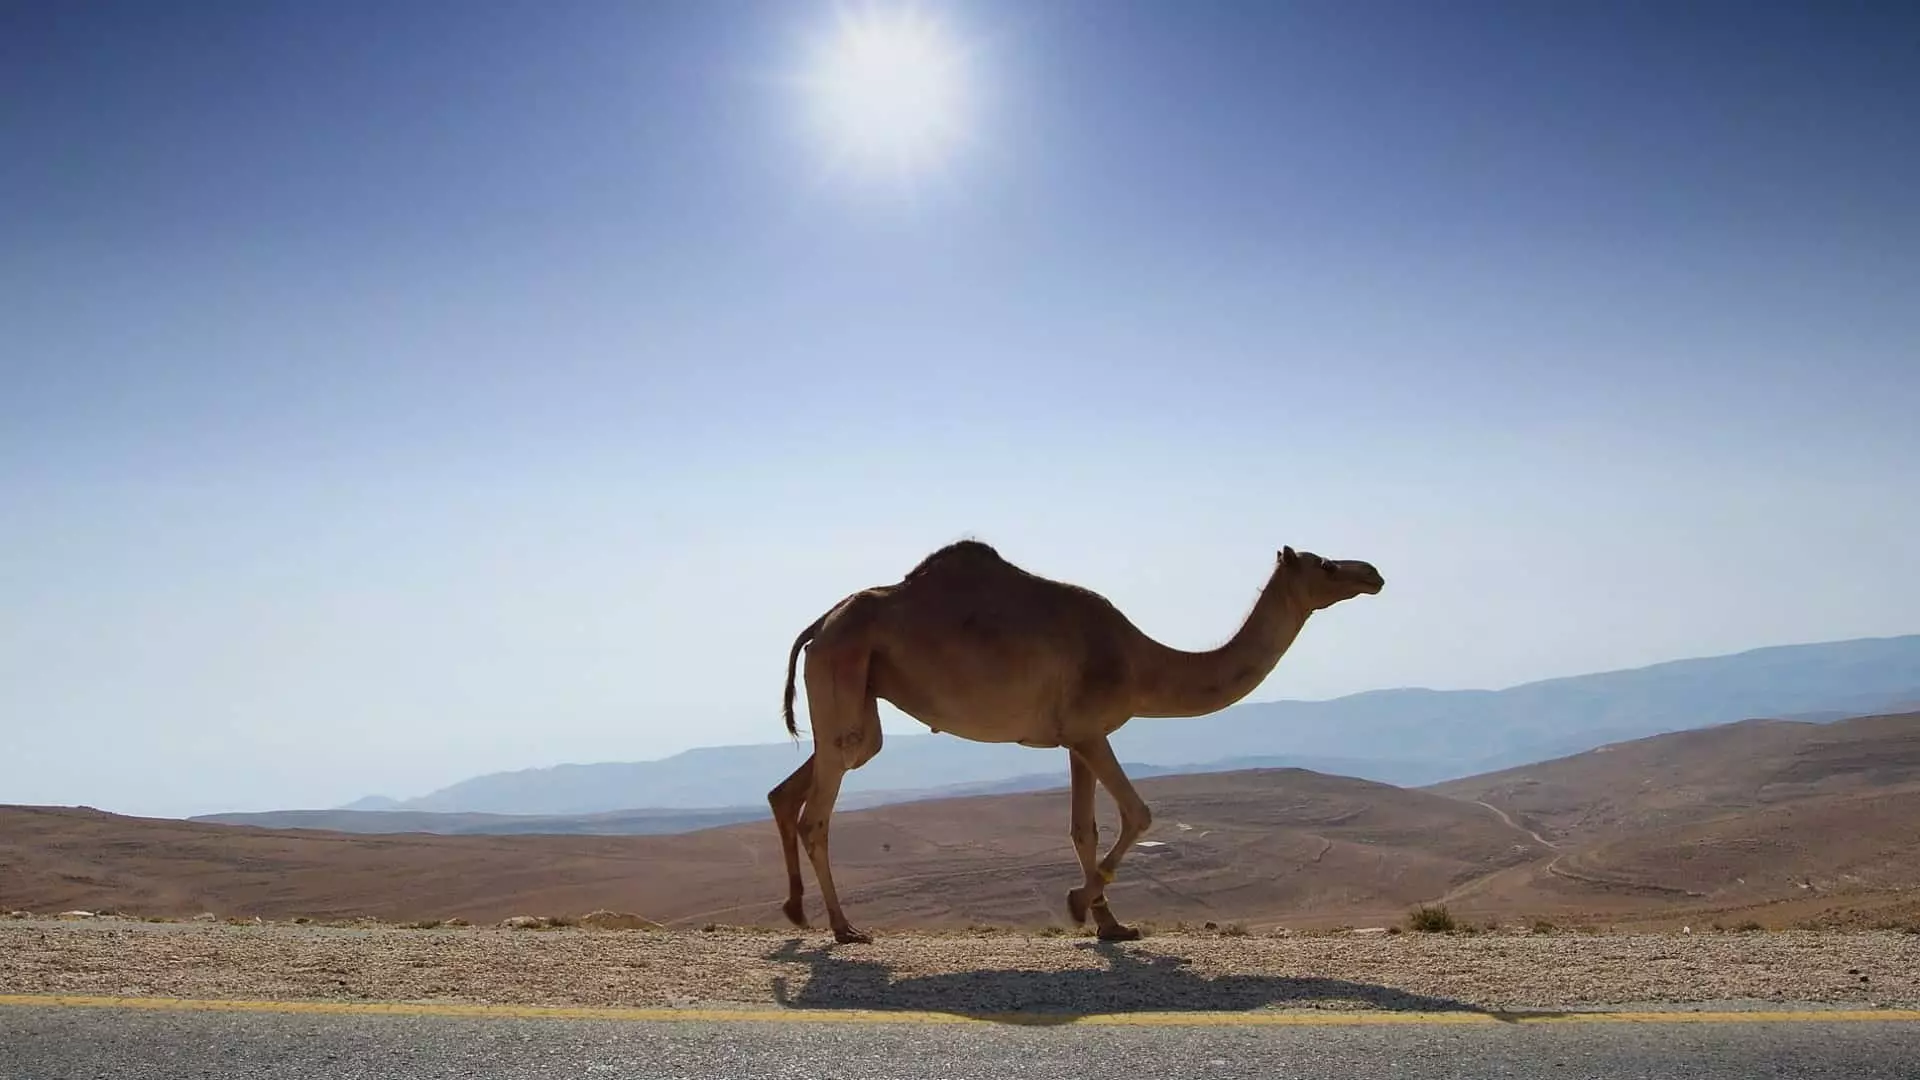 Camel hauv suab puam